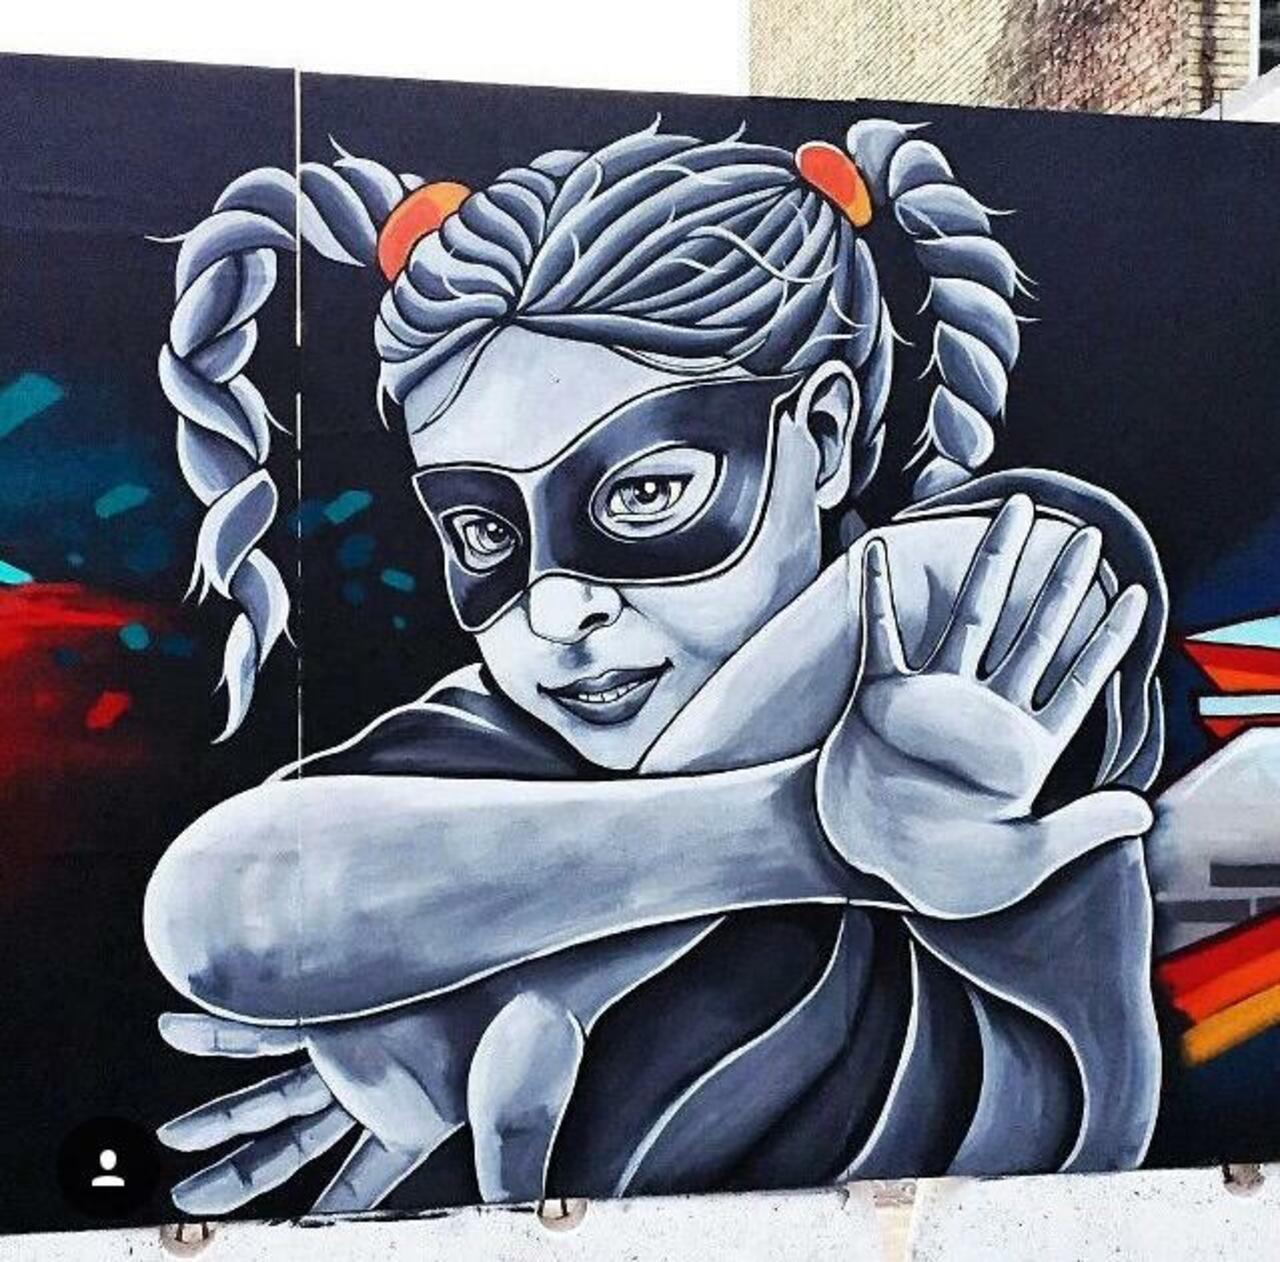 RT @artlife365: Street Art by Stinehvid 

#art #graffiti #mural #streetart http://t.co/6DKbdCxJJY